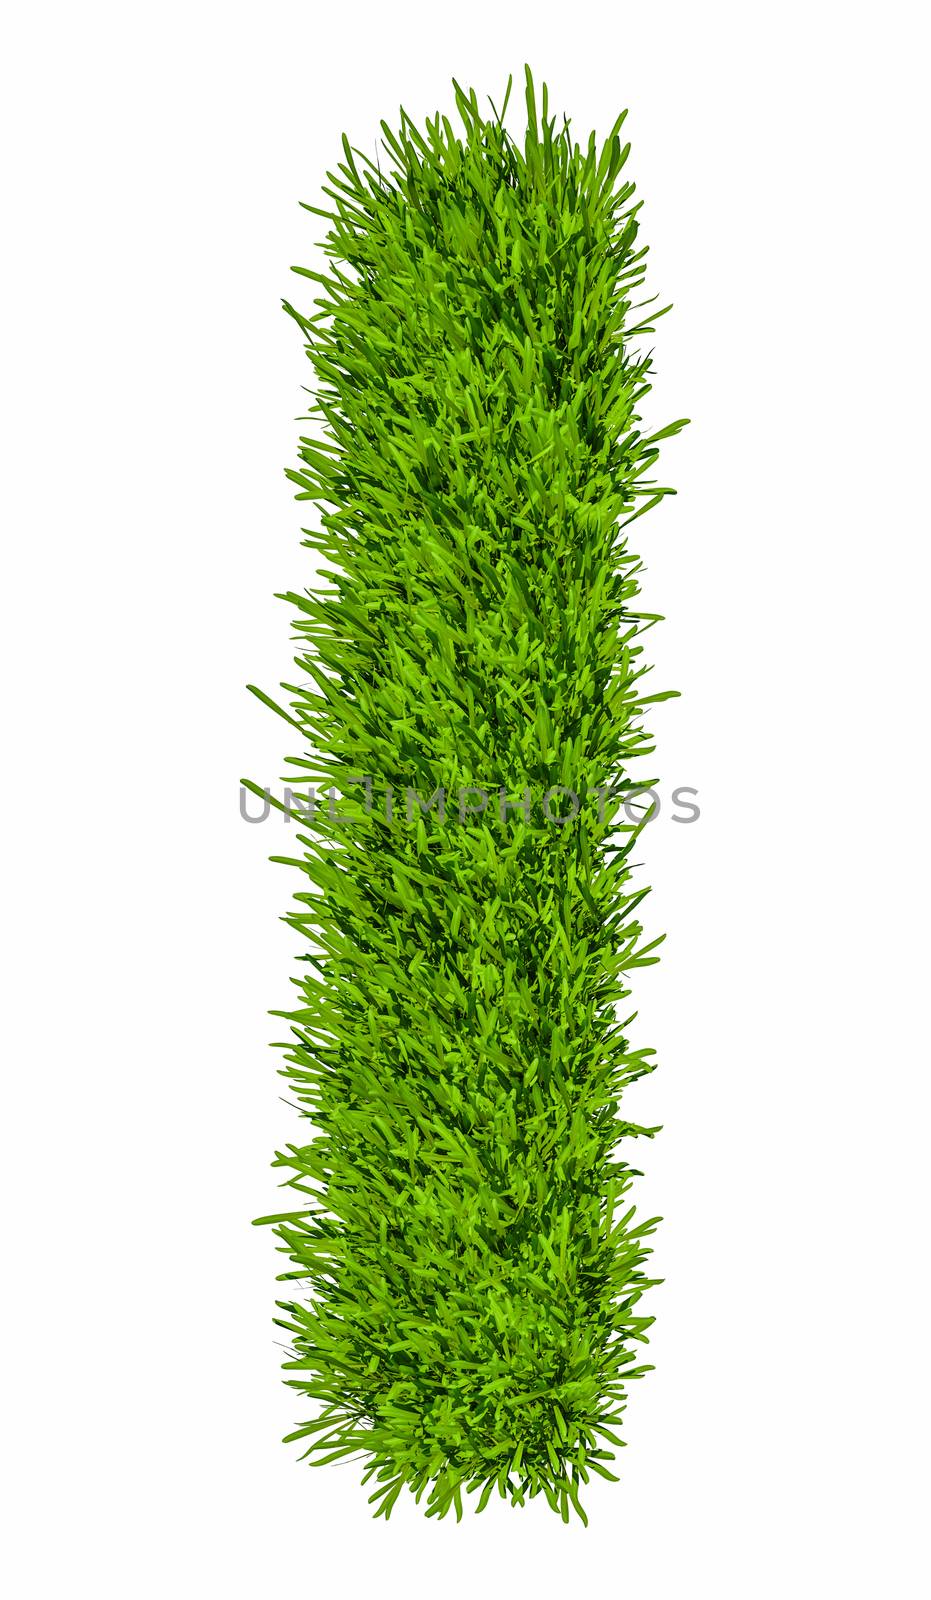 Letter of grass alphabet. Grass letter I isolated on white background. 3d illustration